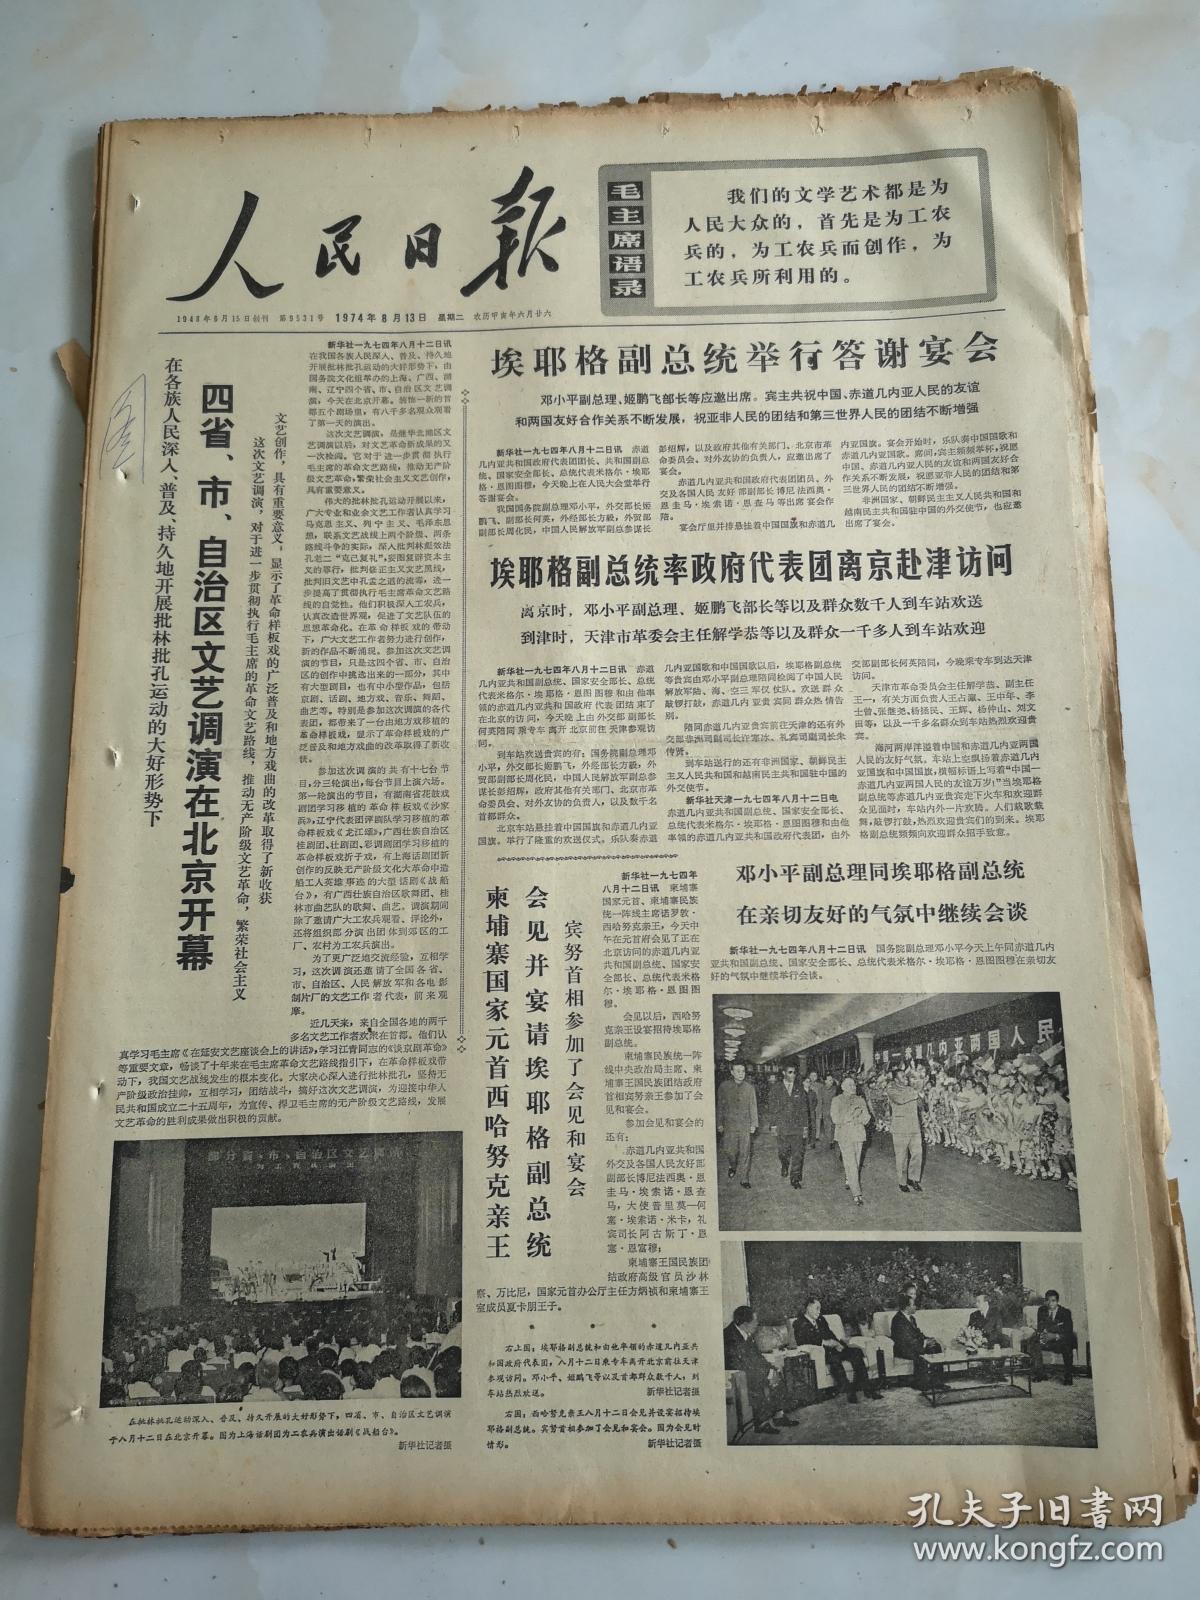 1974年8月13日人民日报  埃耶格副总统举行答谢宴会